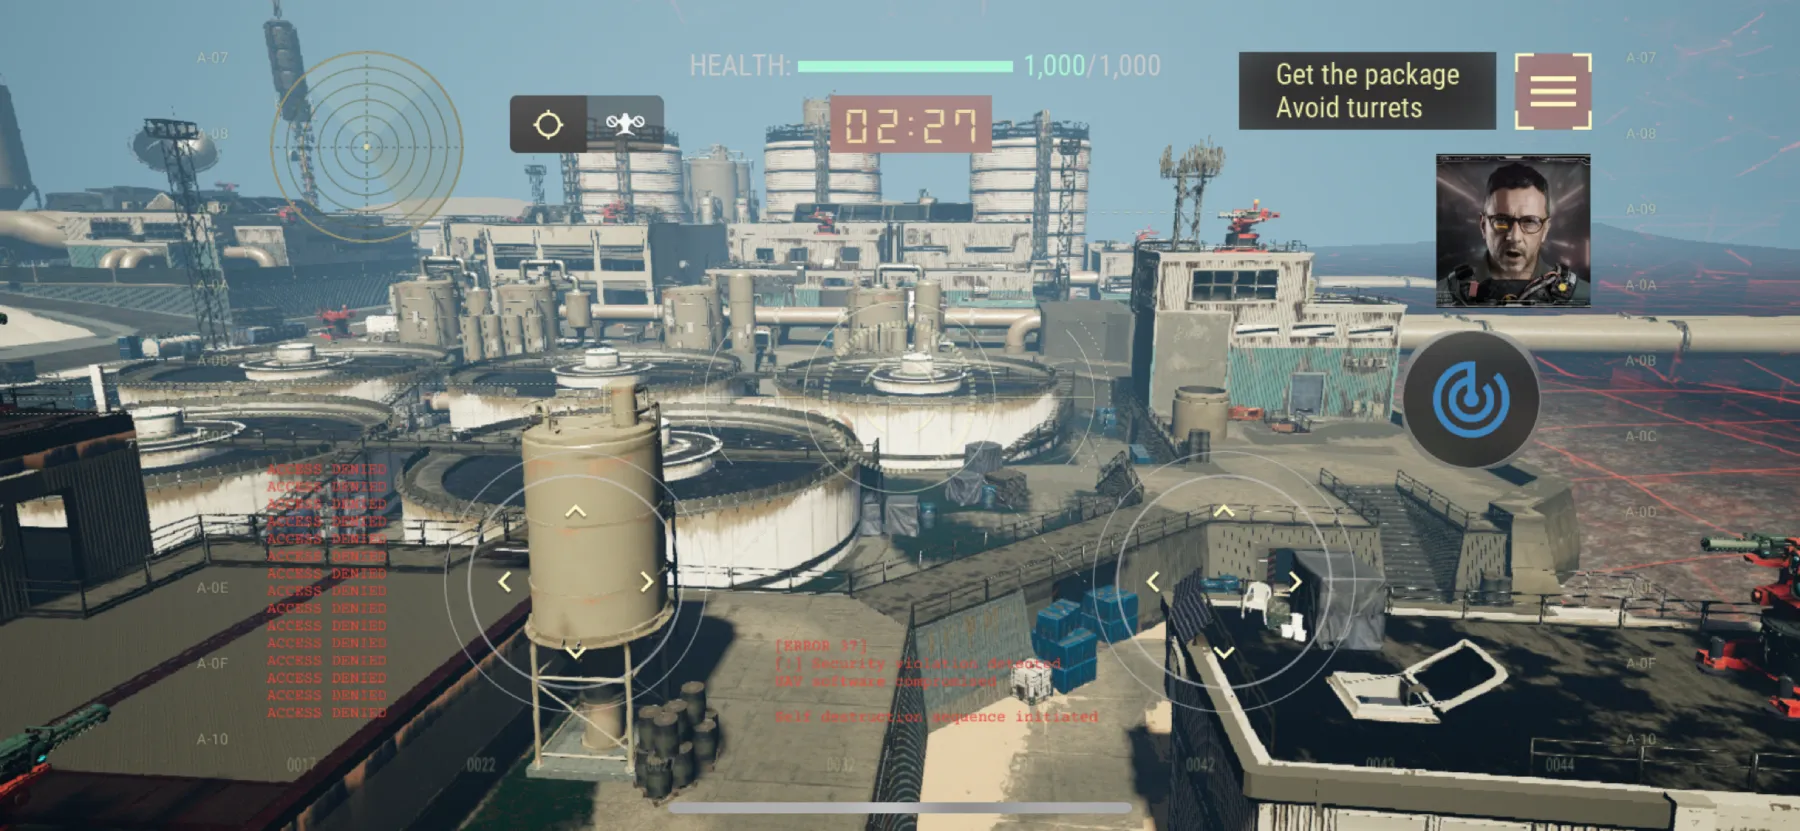 Captura de pantalla del juego Technocore, mostrando una interfaz de dron superpuesta en un entorno industrial.